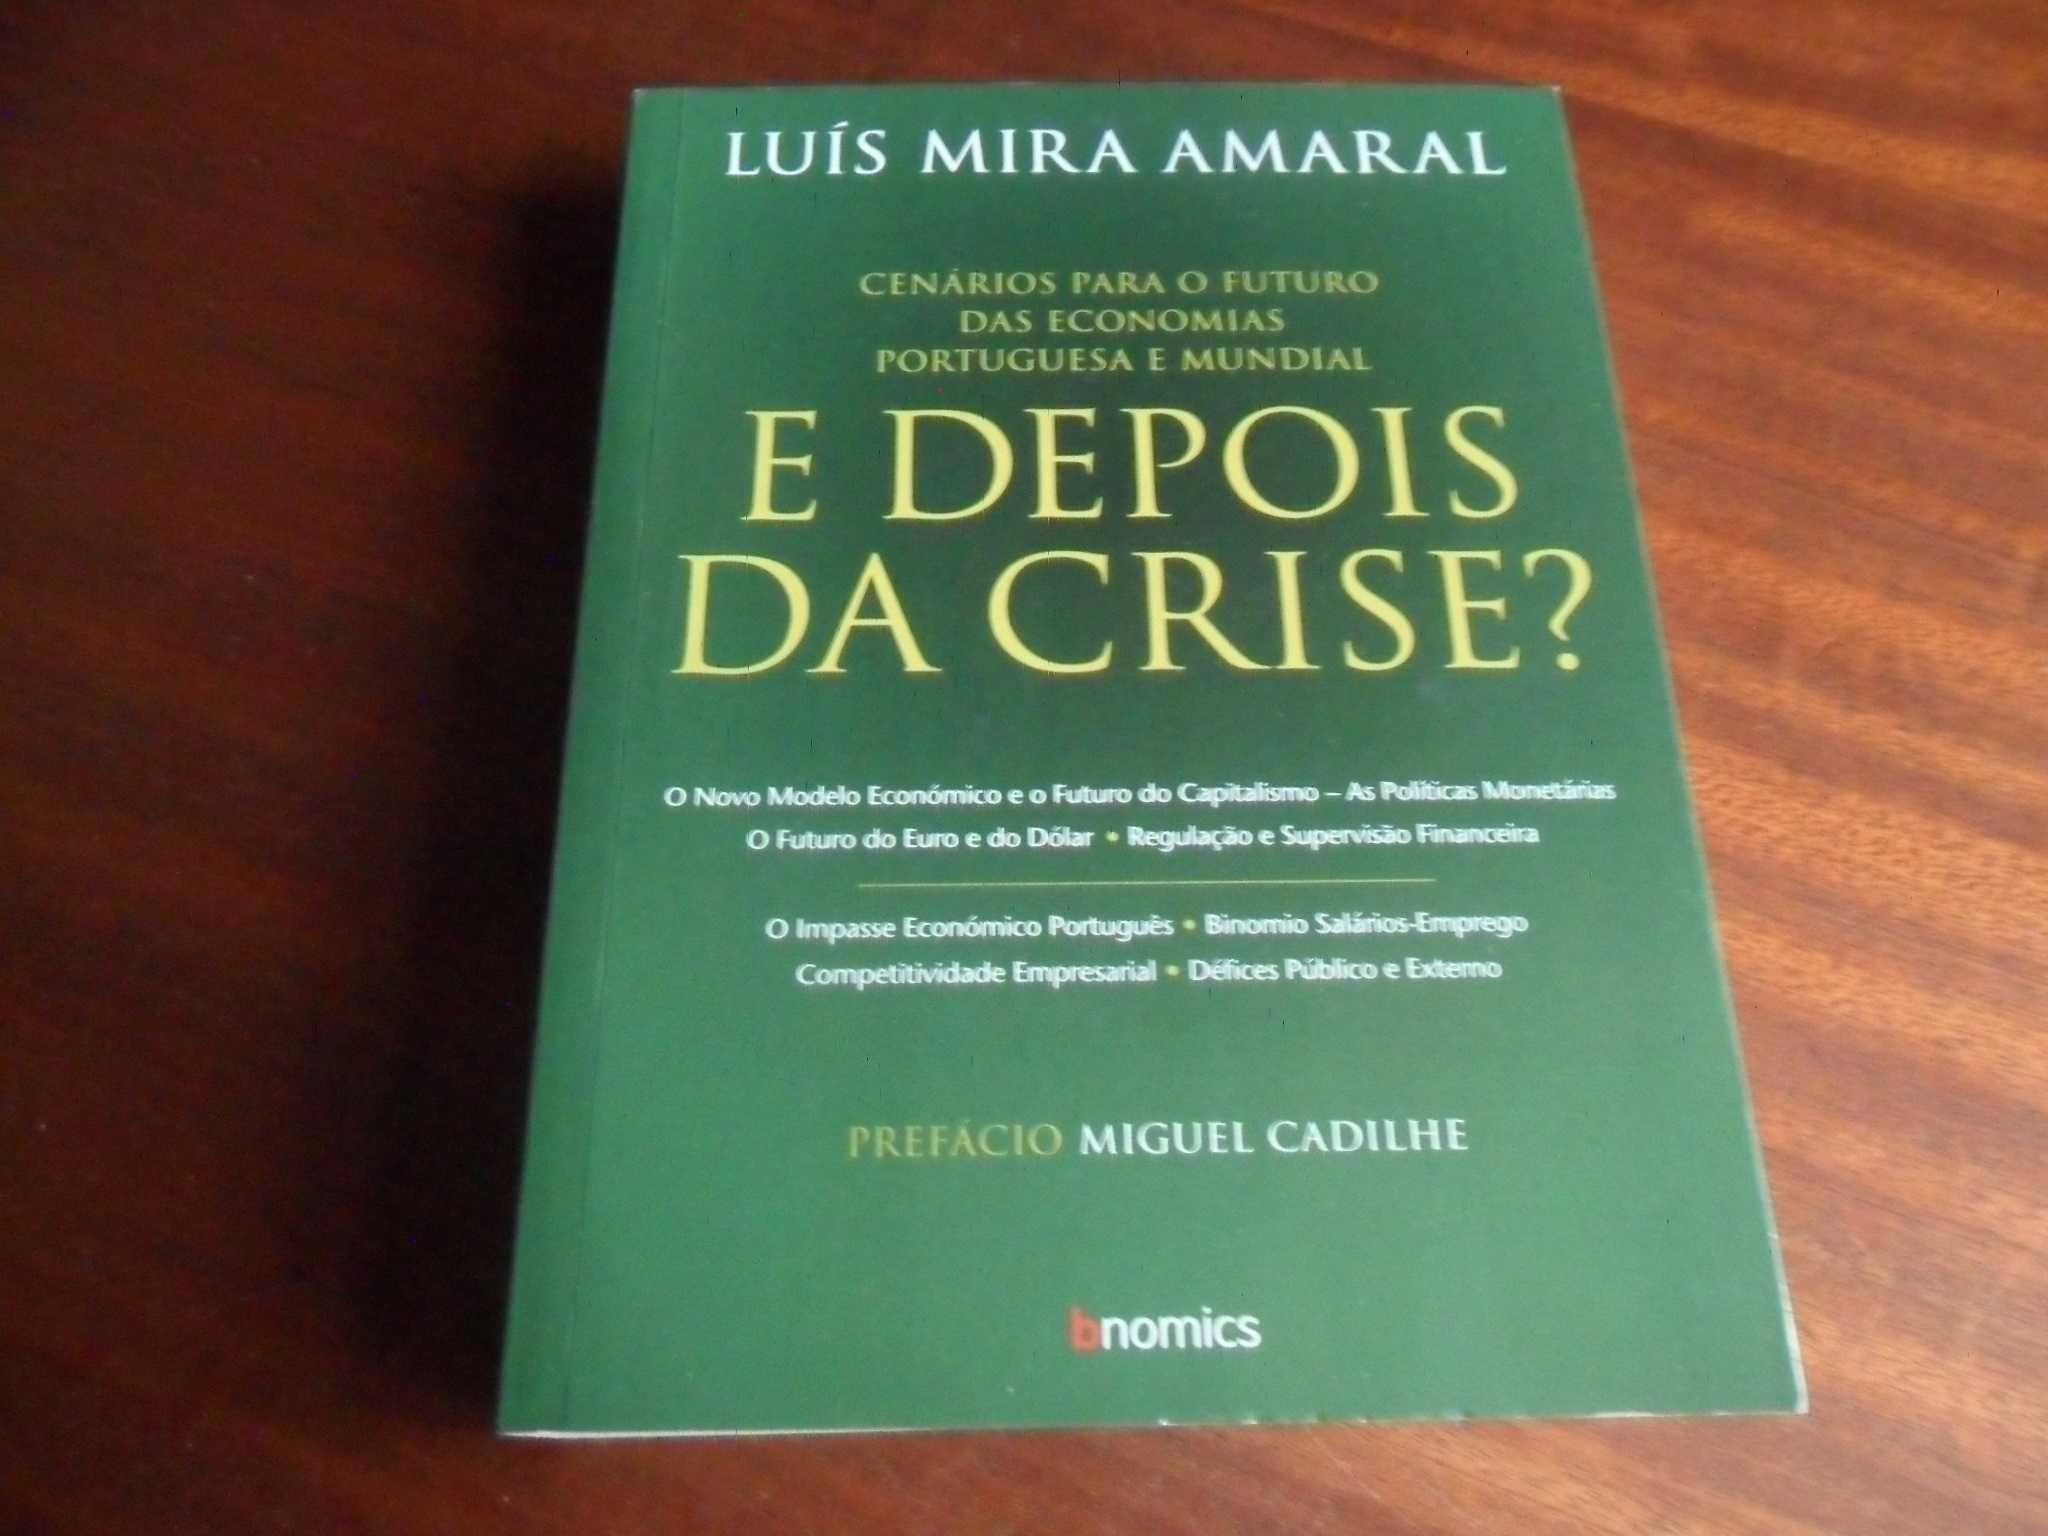 "E Depois da Crise?" de Luís Mira Amaral - 1ª Edição de 2009